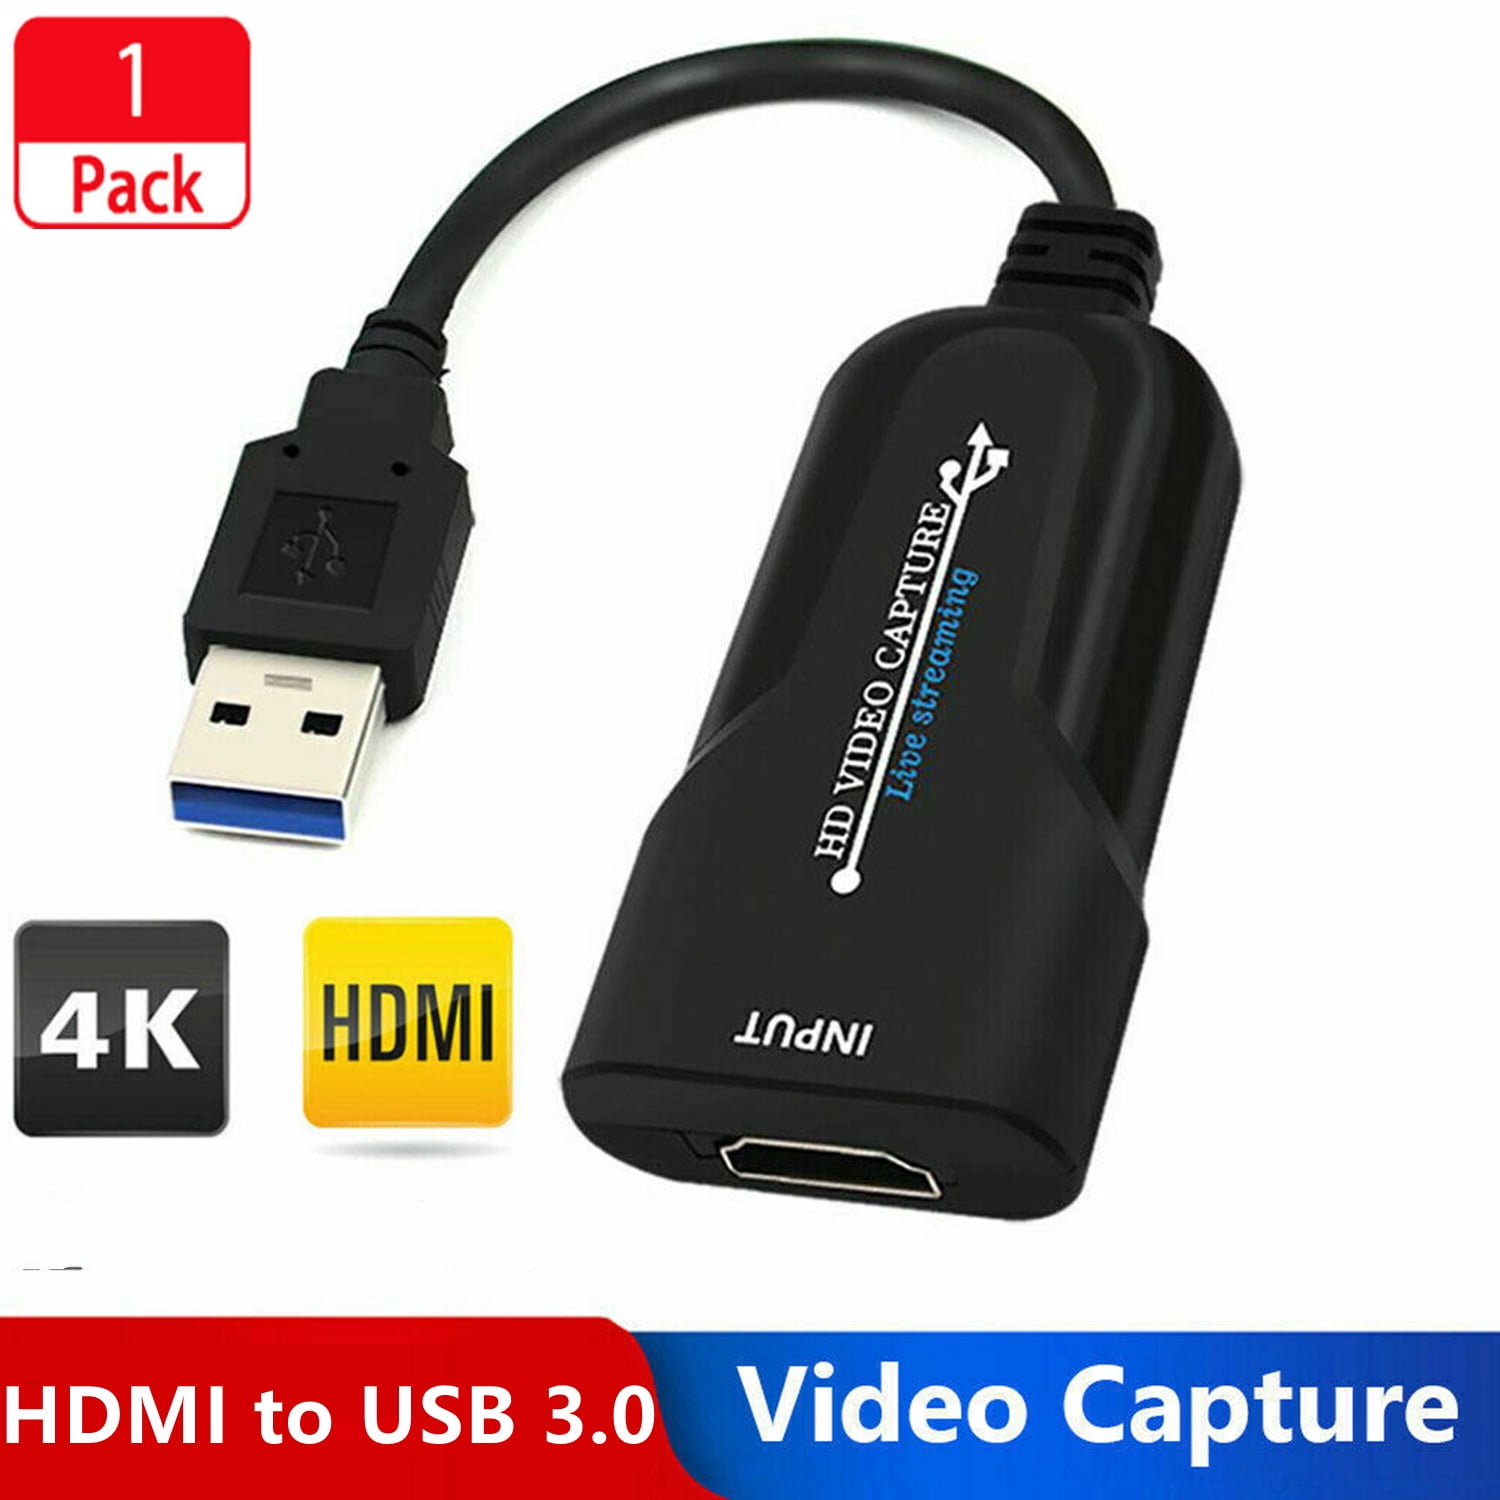 Forvirrede Kunstig eksegese Video Capture Card, HDMI Game Capture Card, USB 3.0 HDMI Game Capture Card,  1080P Game/Live Broadcast/Recording - Walmart.com